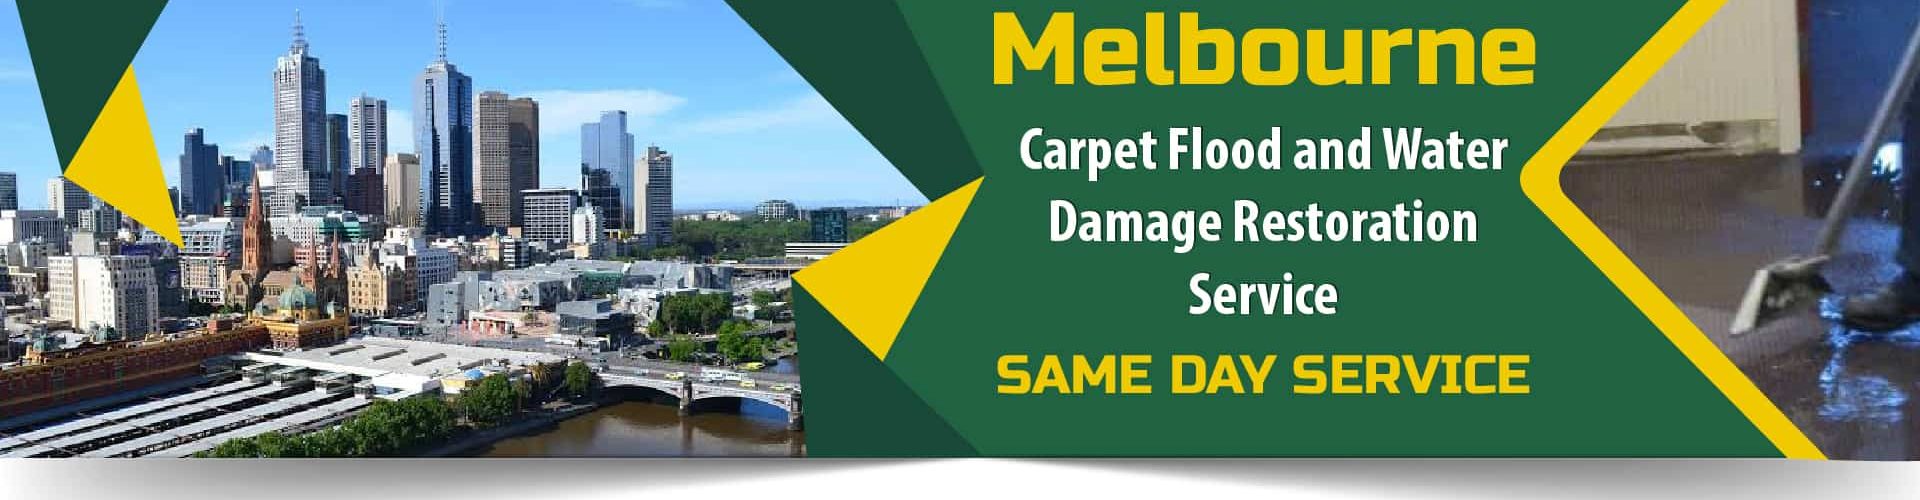 Carpet Flood and Water Damage Restoration Melbourne